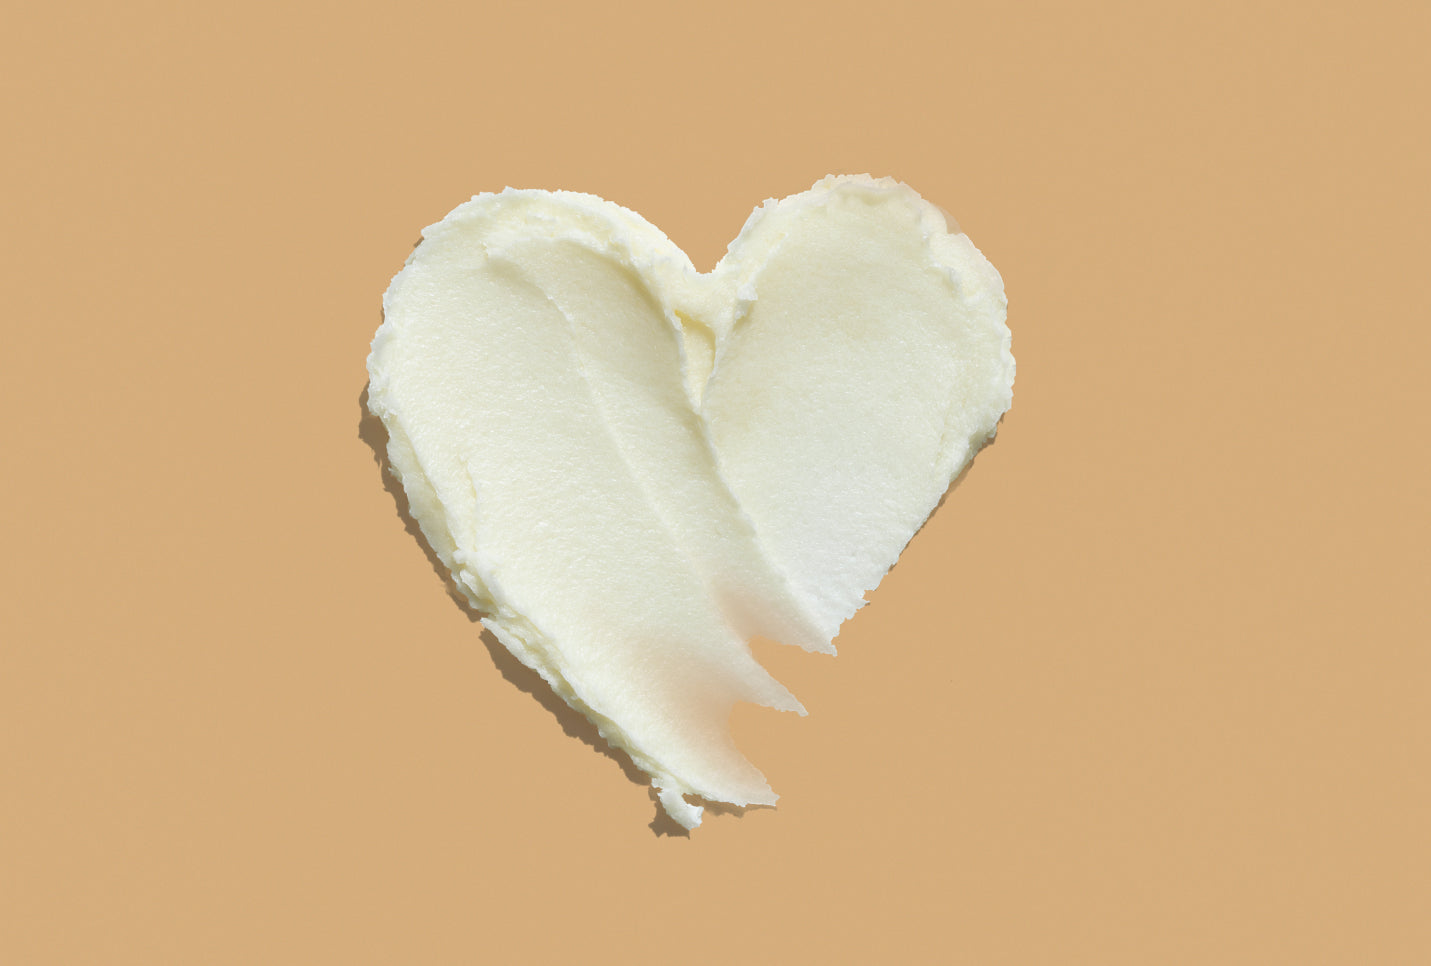 8 Reasons Shea Butter Benefits Your Skin